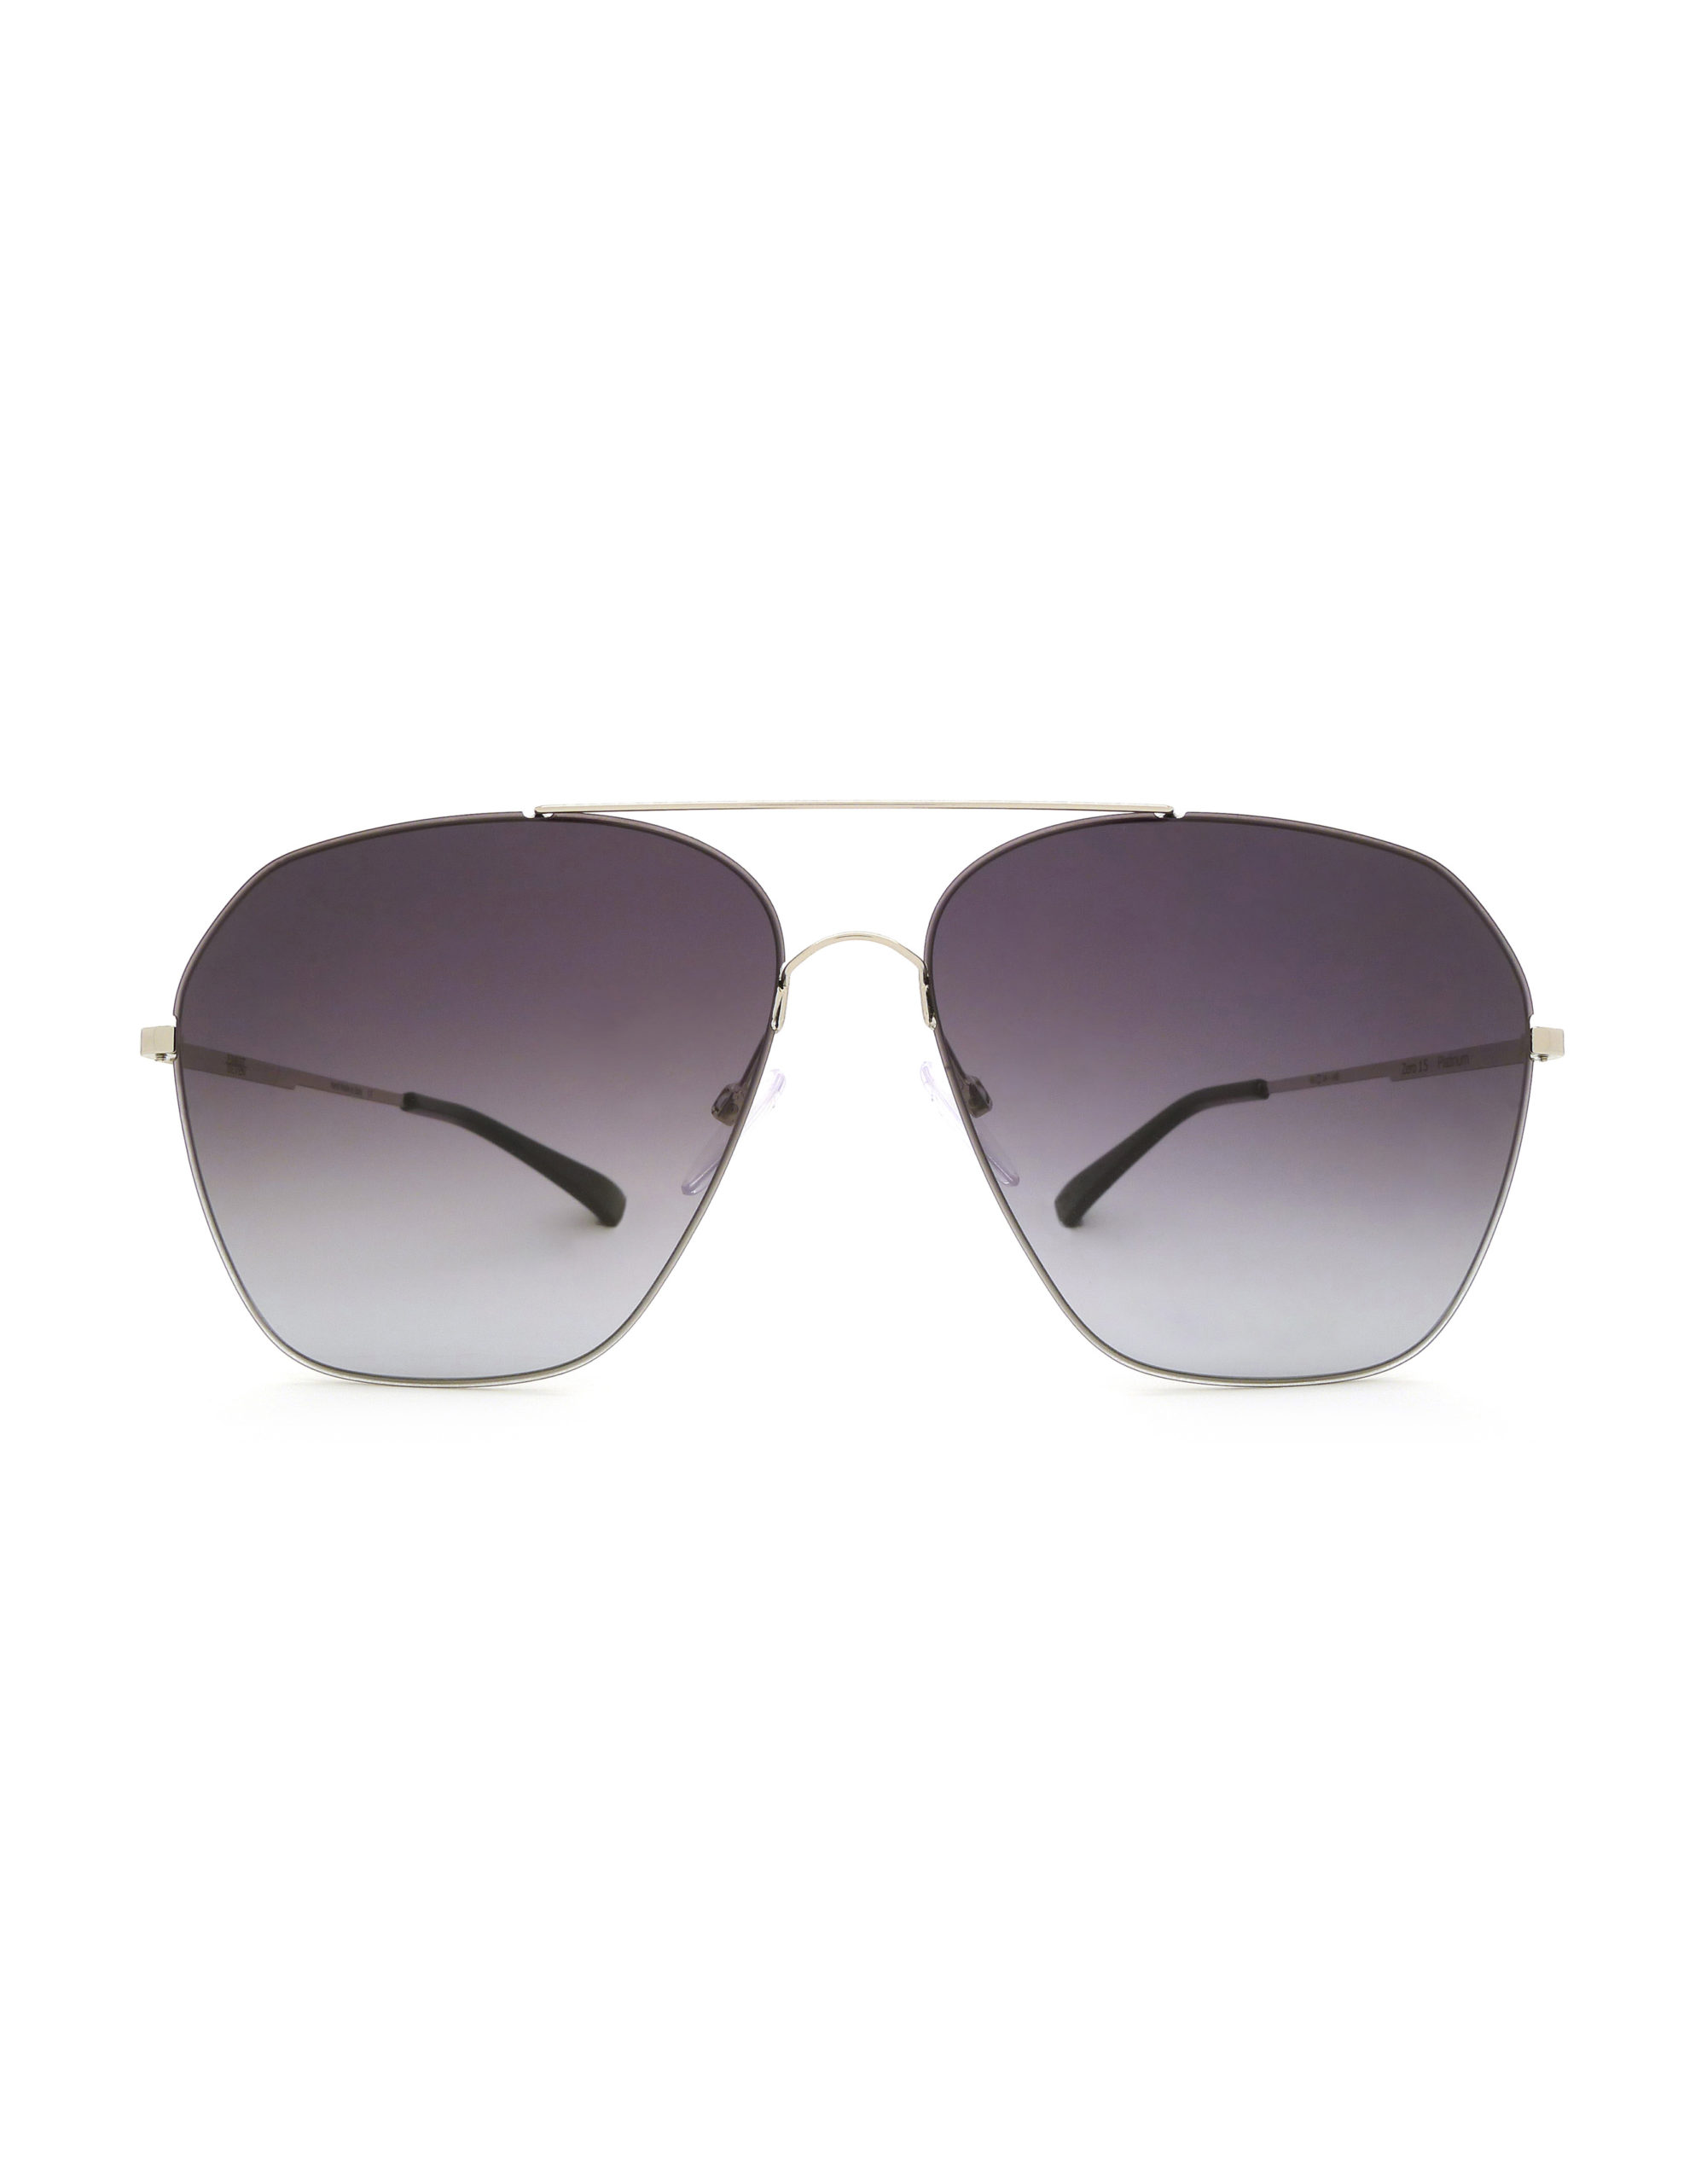 ZERO 15 Grad Black - Luxury Sunglasses, Designer Sunglasses | Finest Seven